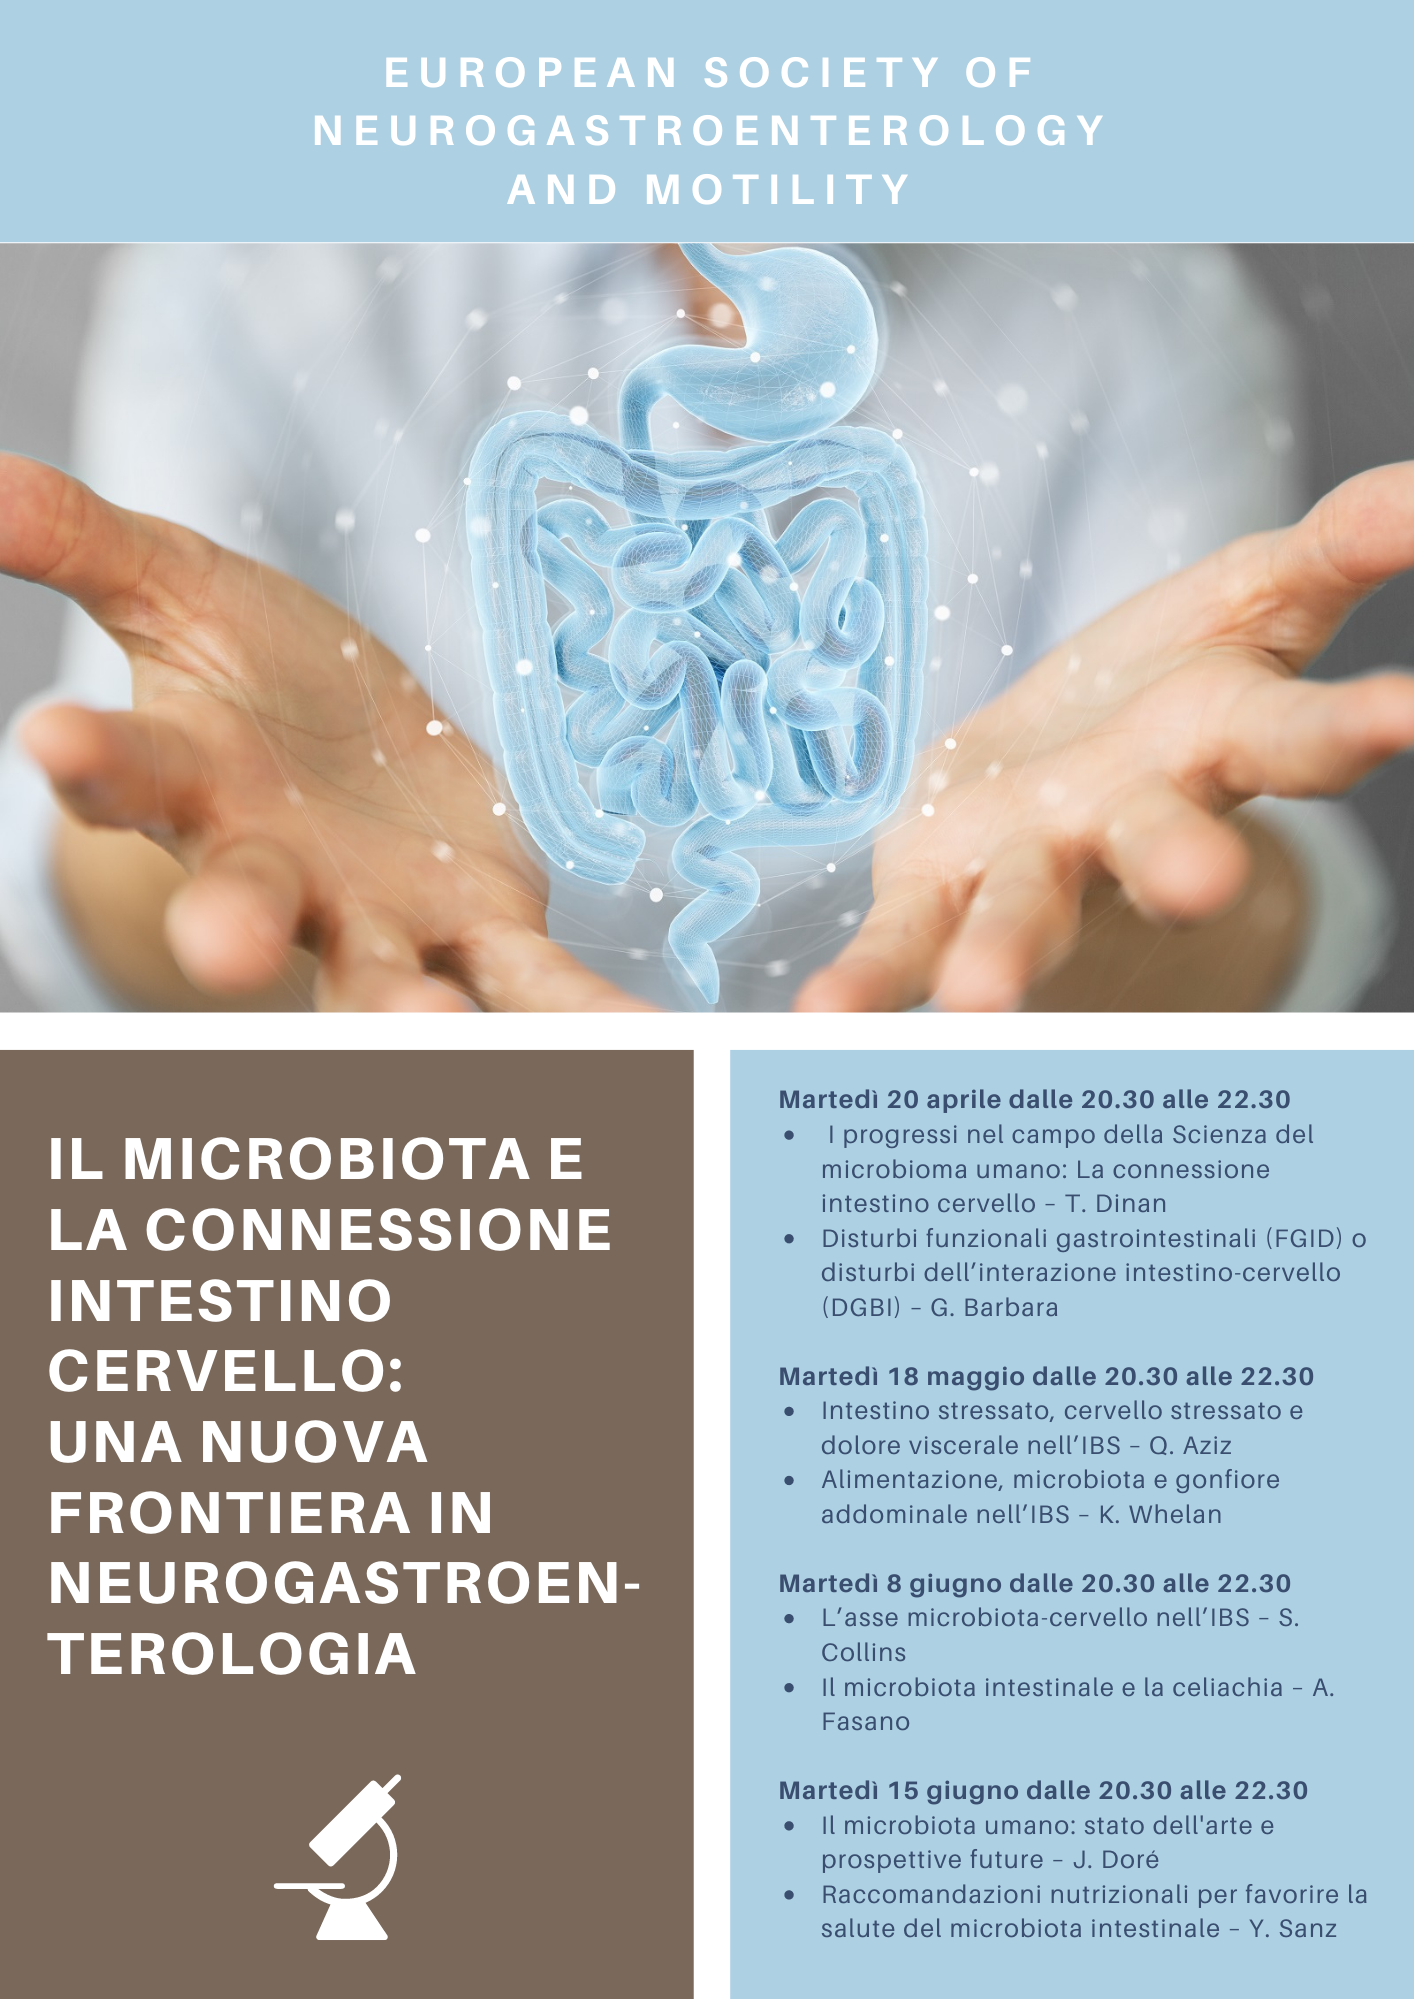 Il microbiota e la connessione intestino cervello: una nuova frontiera in neurogastroenterologia